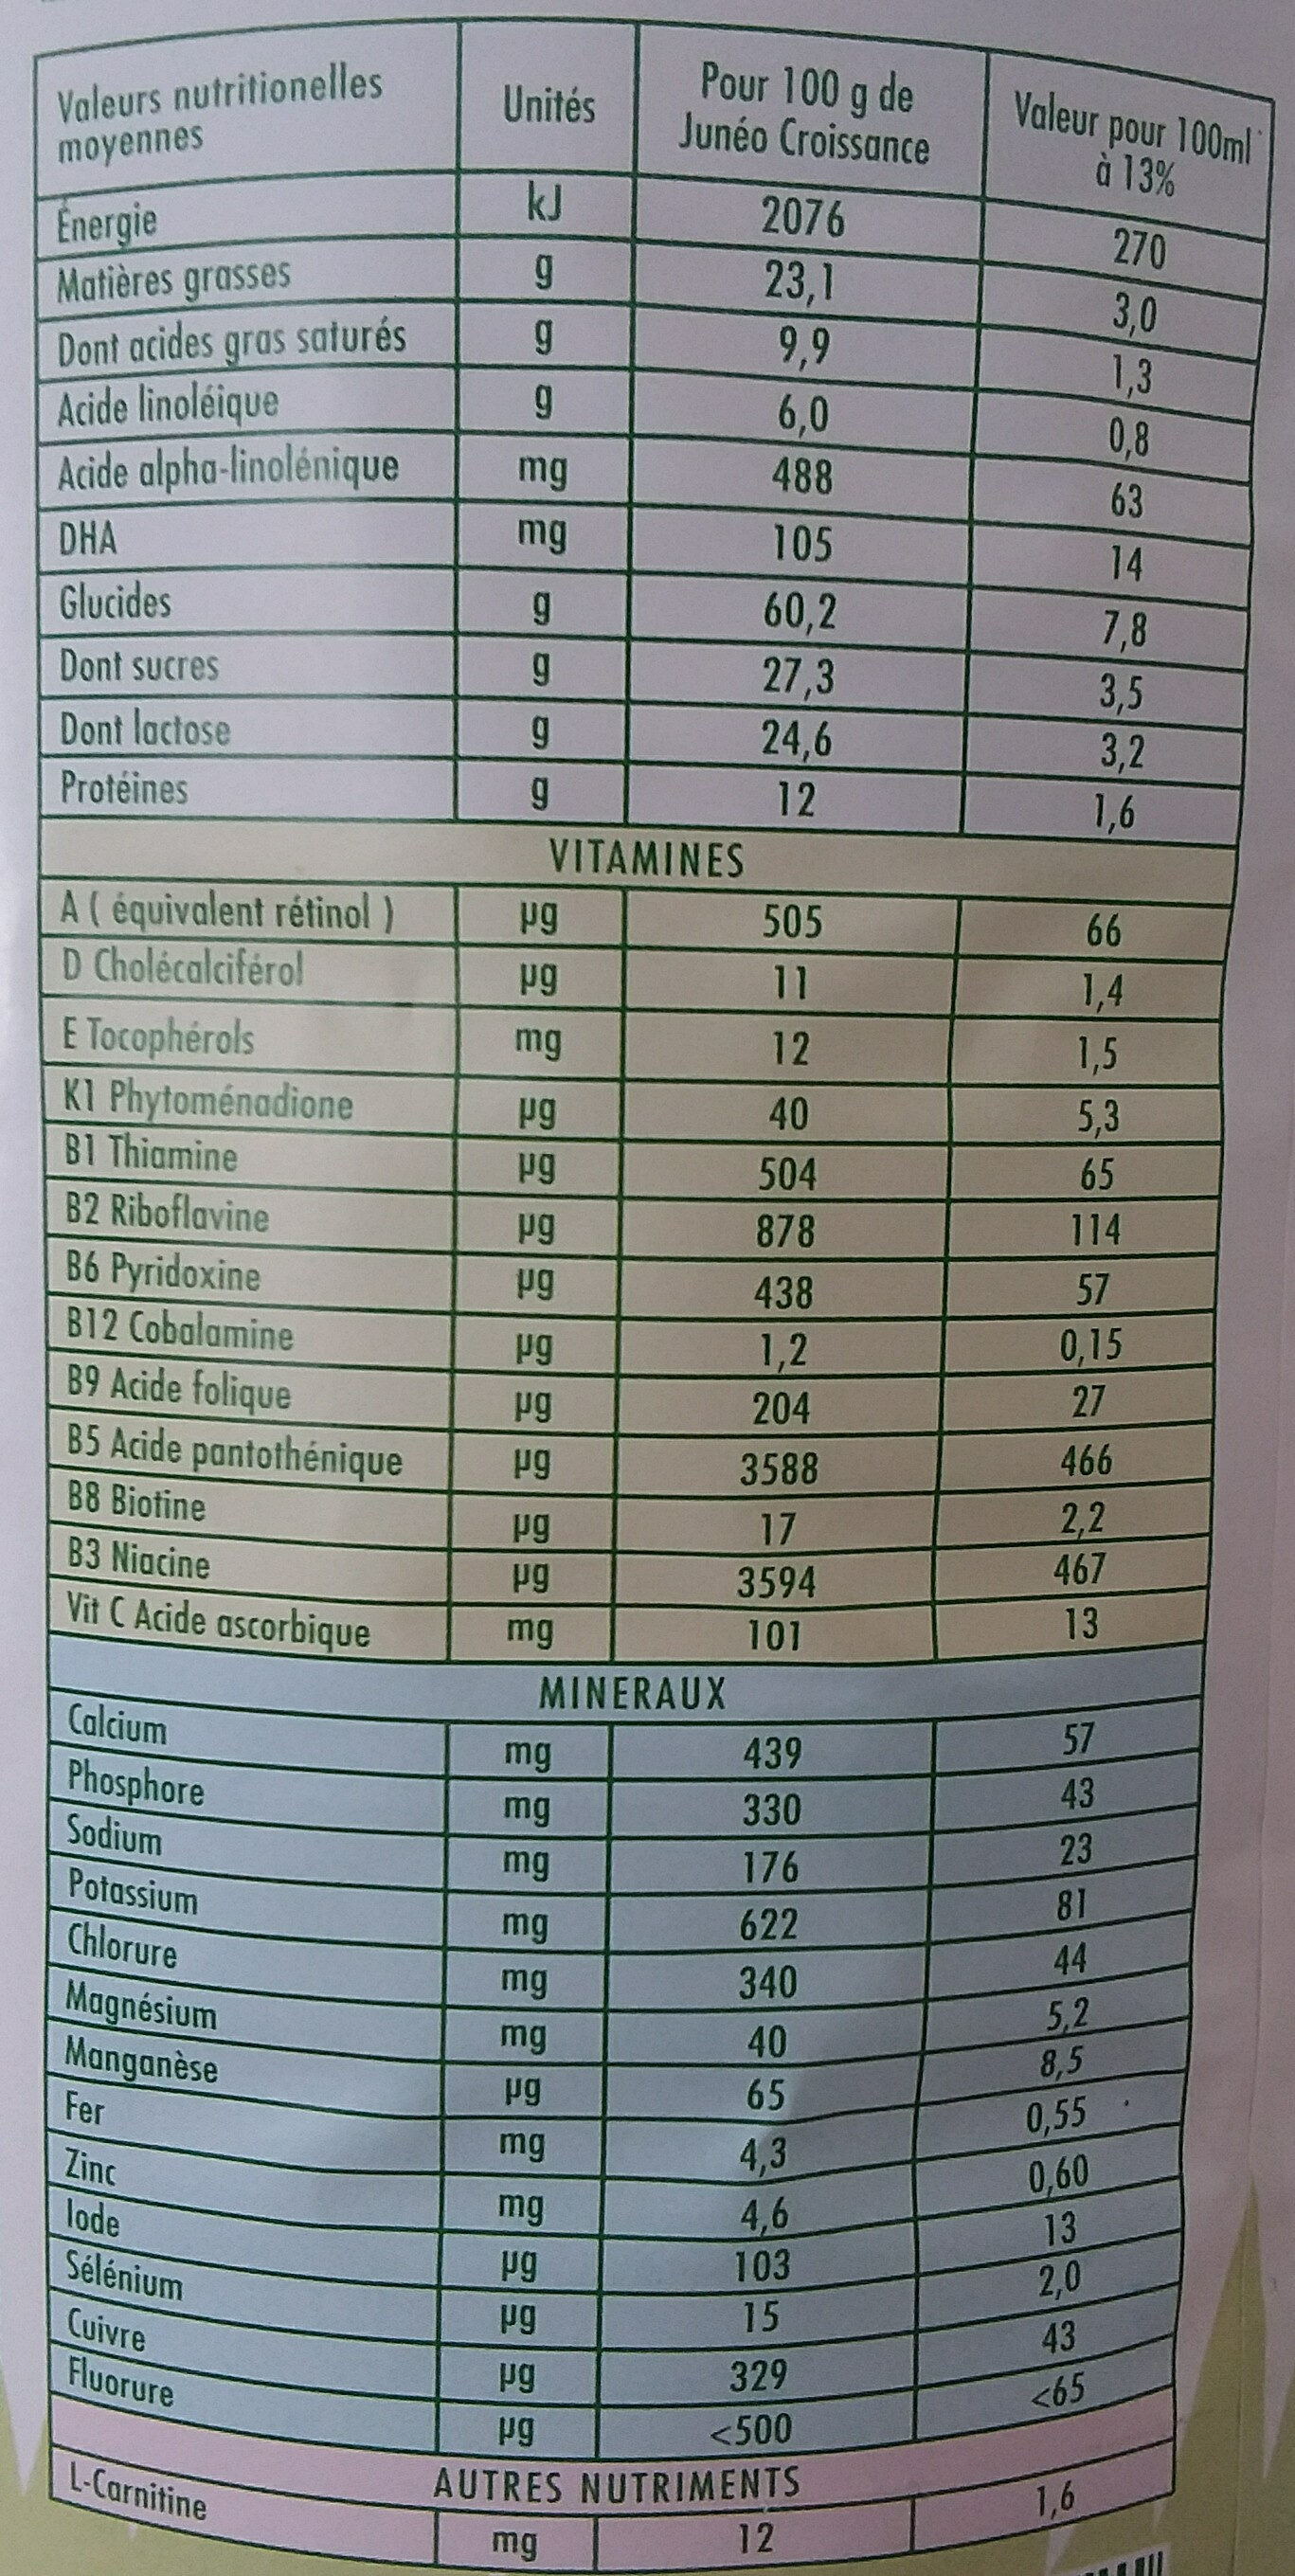 Juneo lait 3eme age - Tableau nutritionnel